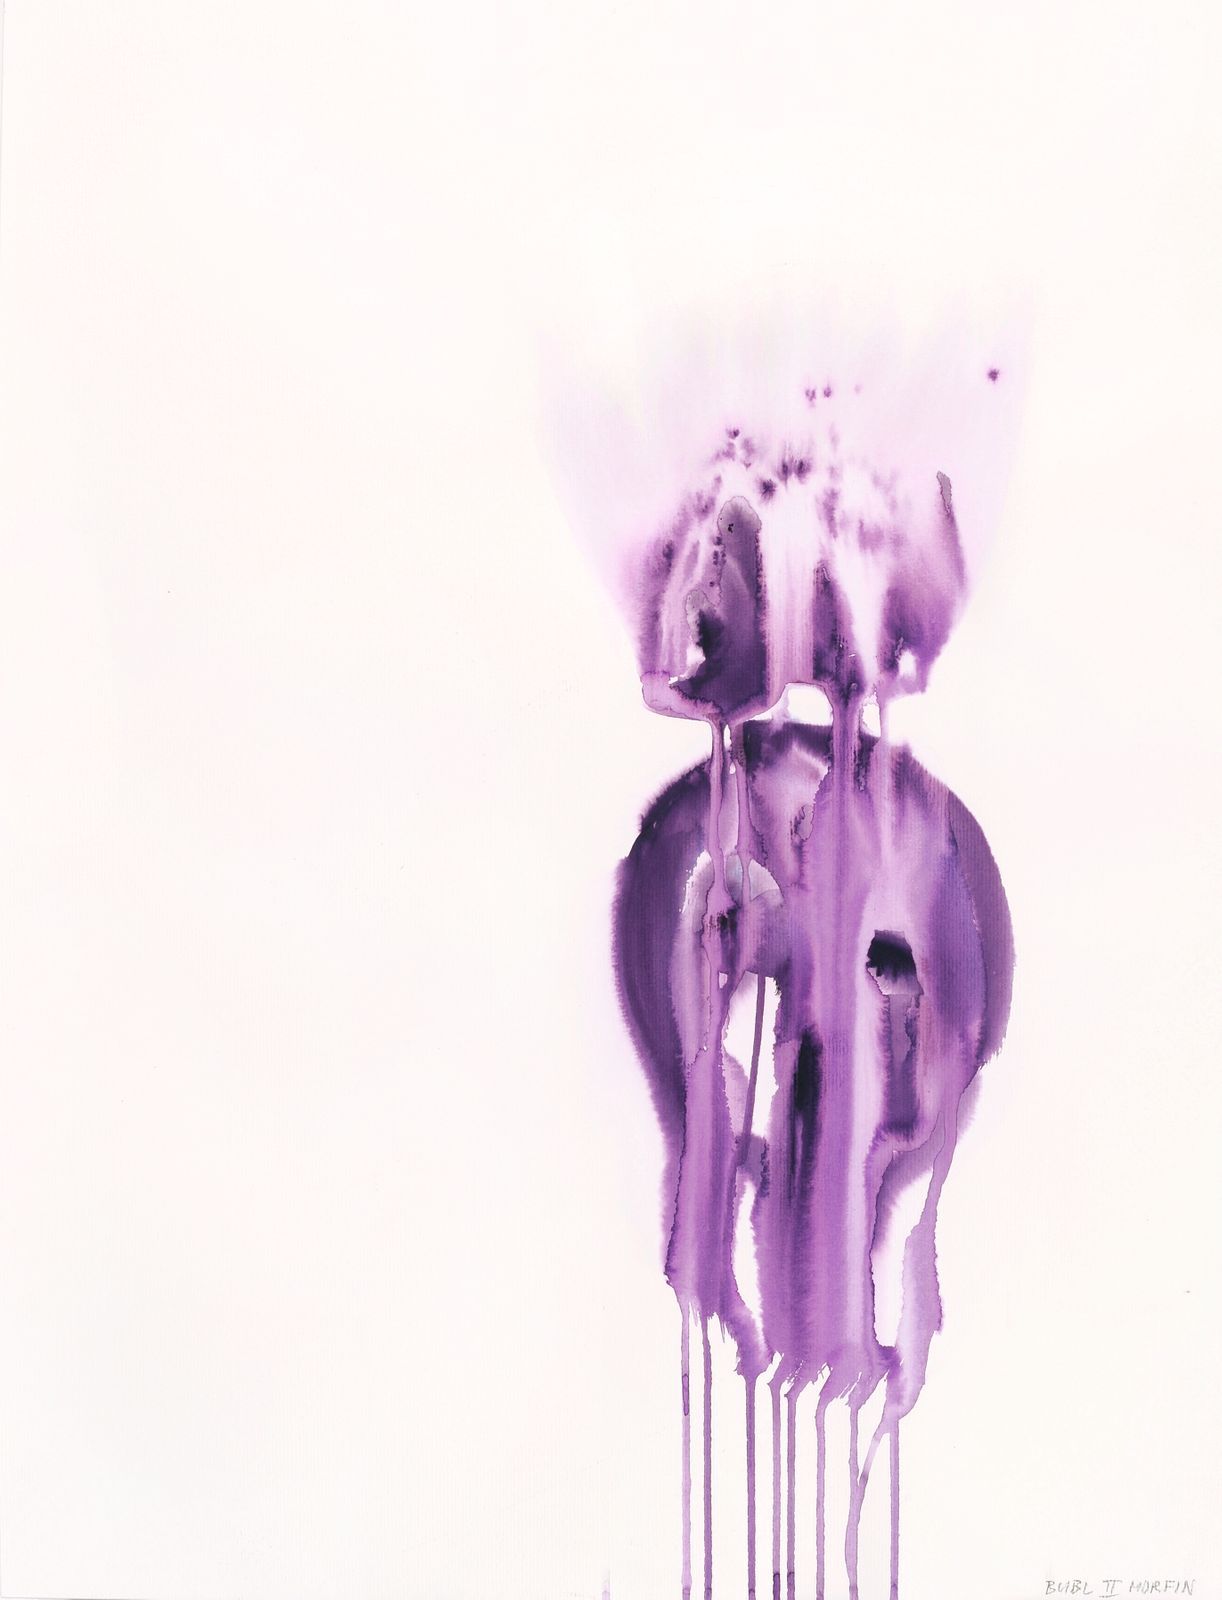 BII Morfin - Usínací, z cyklu Top 12 songs, 2010, akvarel na papíře, 60 x 50 cm